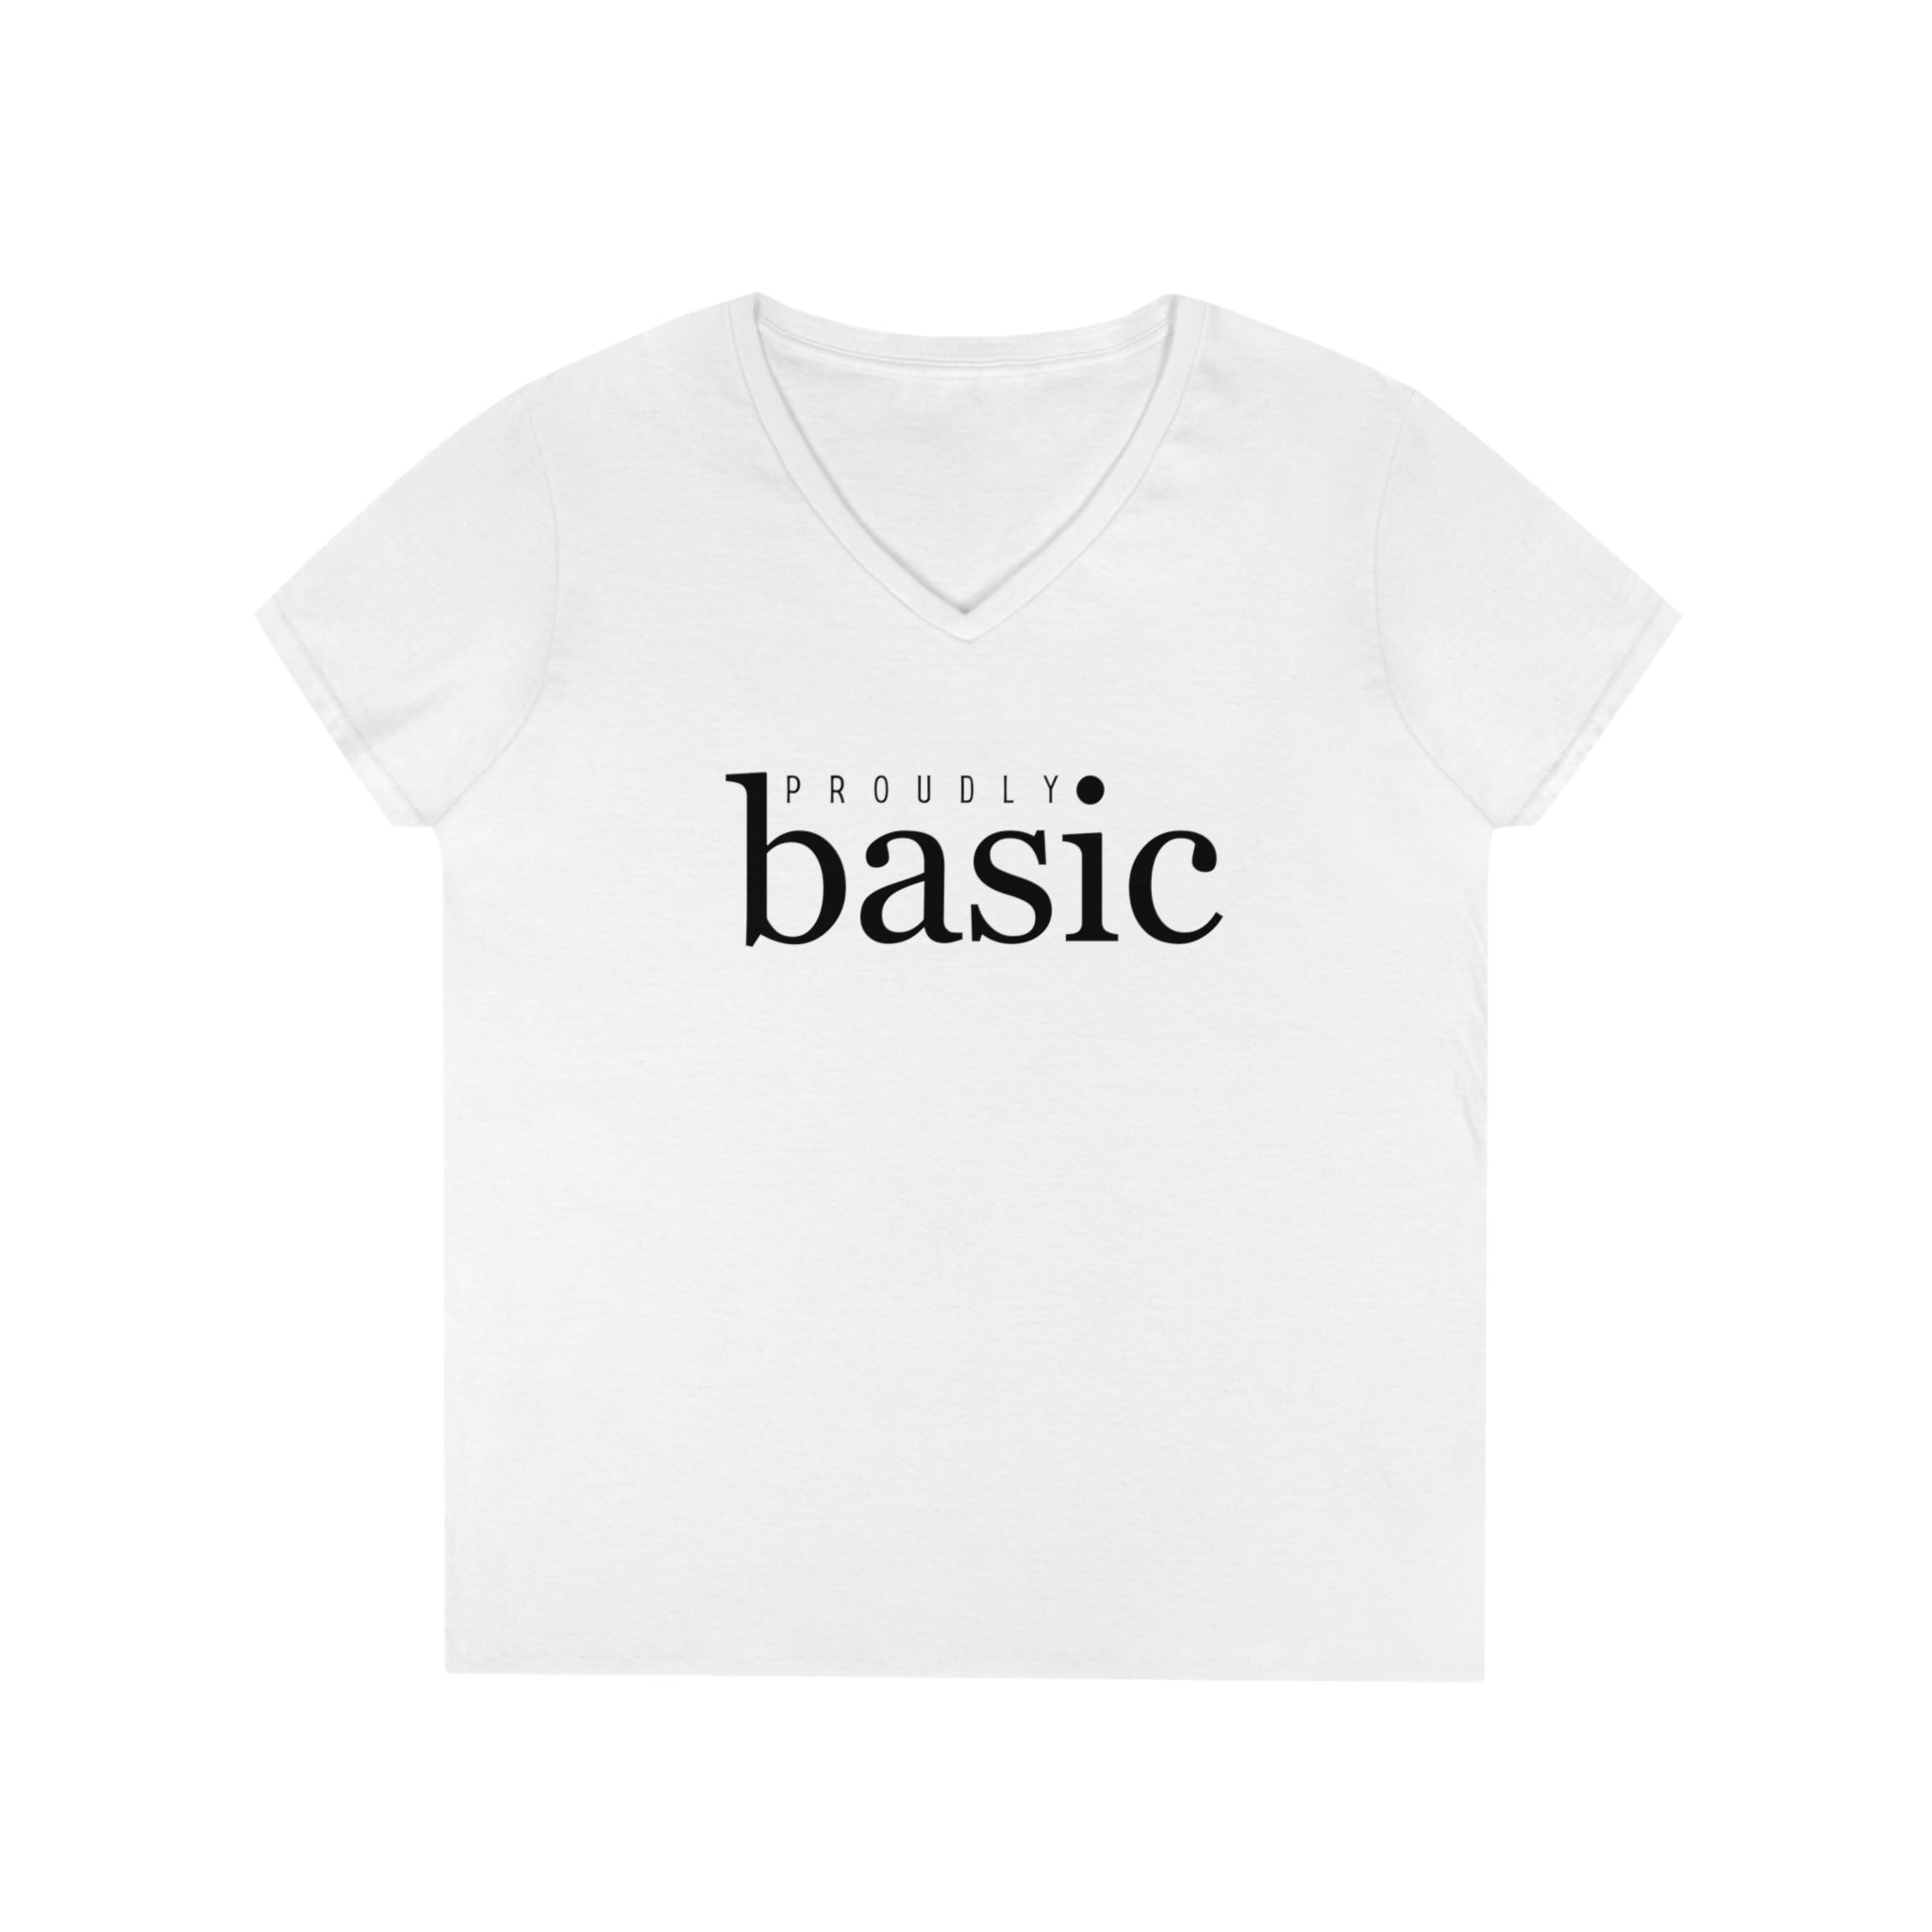  Proudly BASIC Female Empowerment Women's V Neck T-shirt, Feminist Graphic Tee, Cute Women's T-shirt V-neck2XLWhite